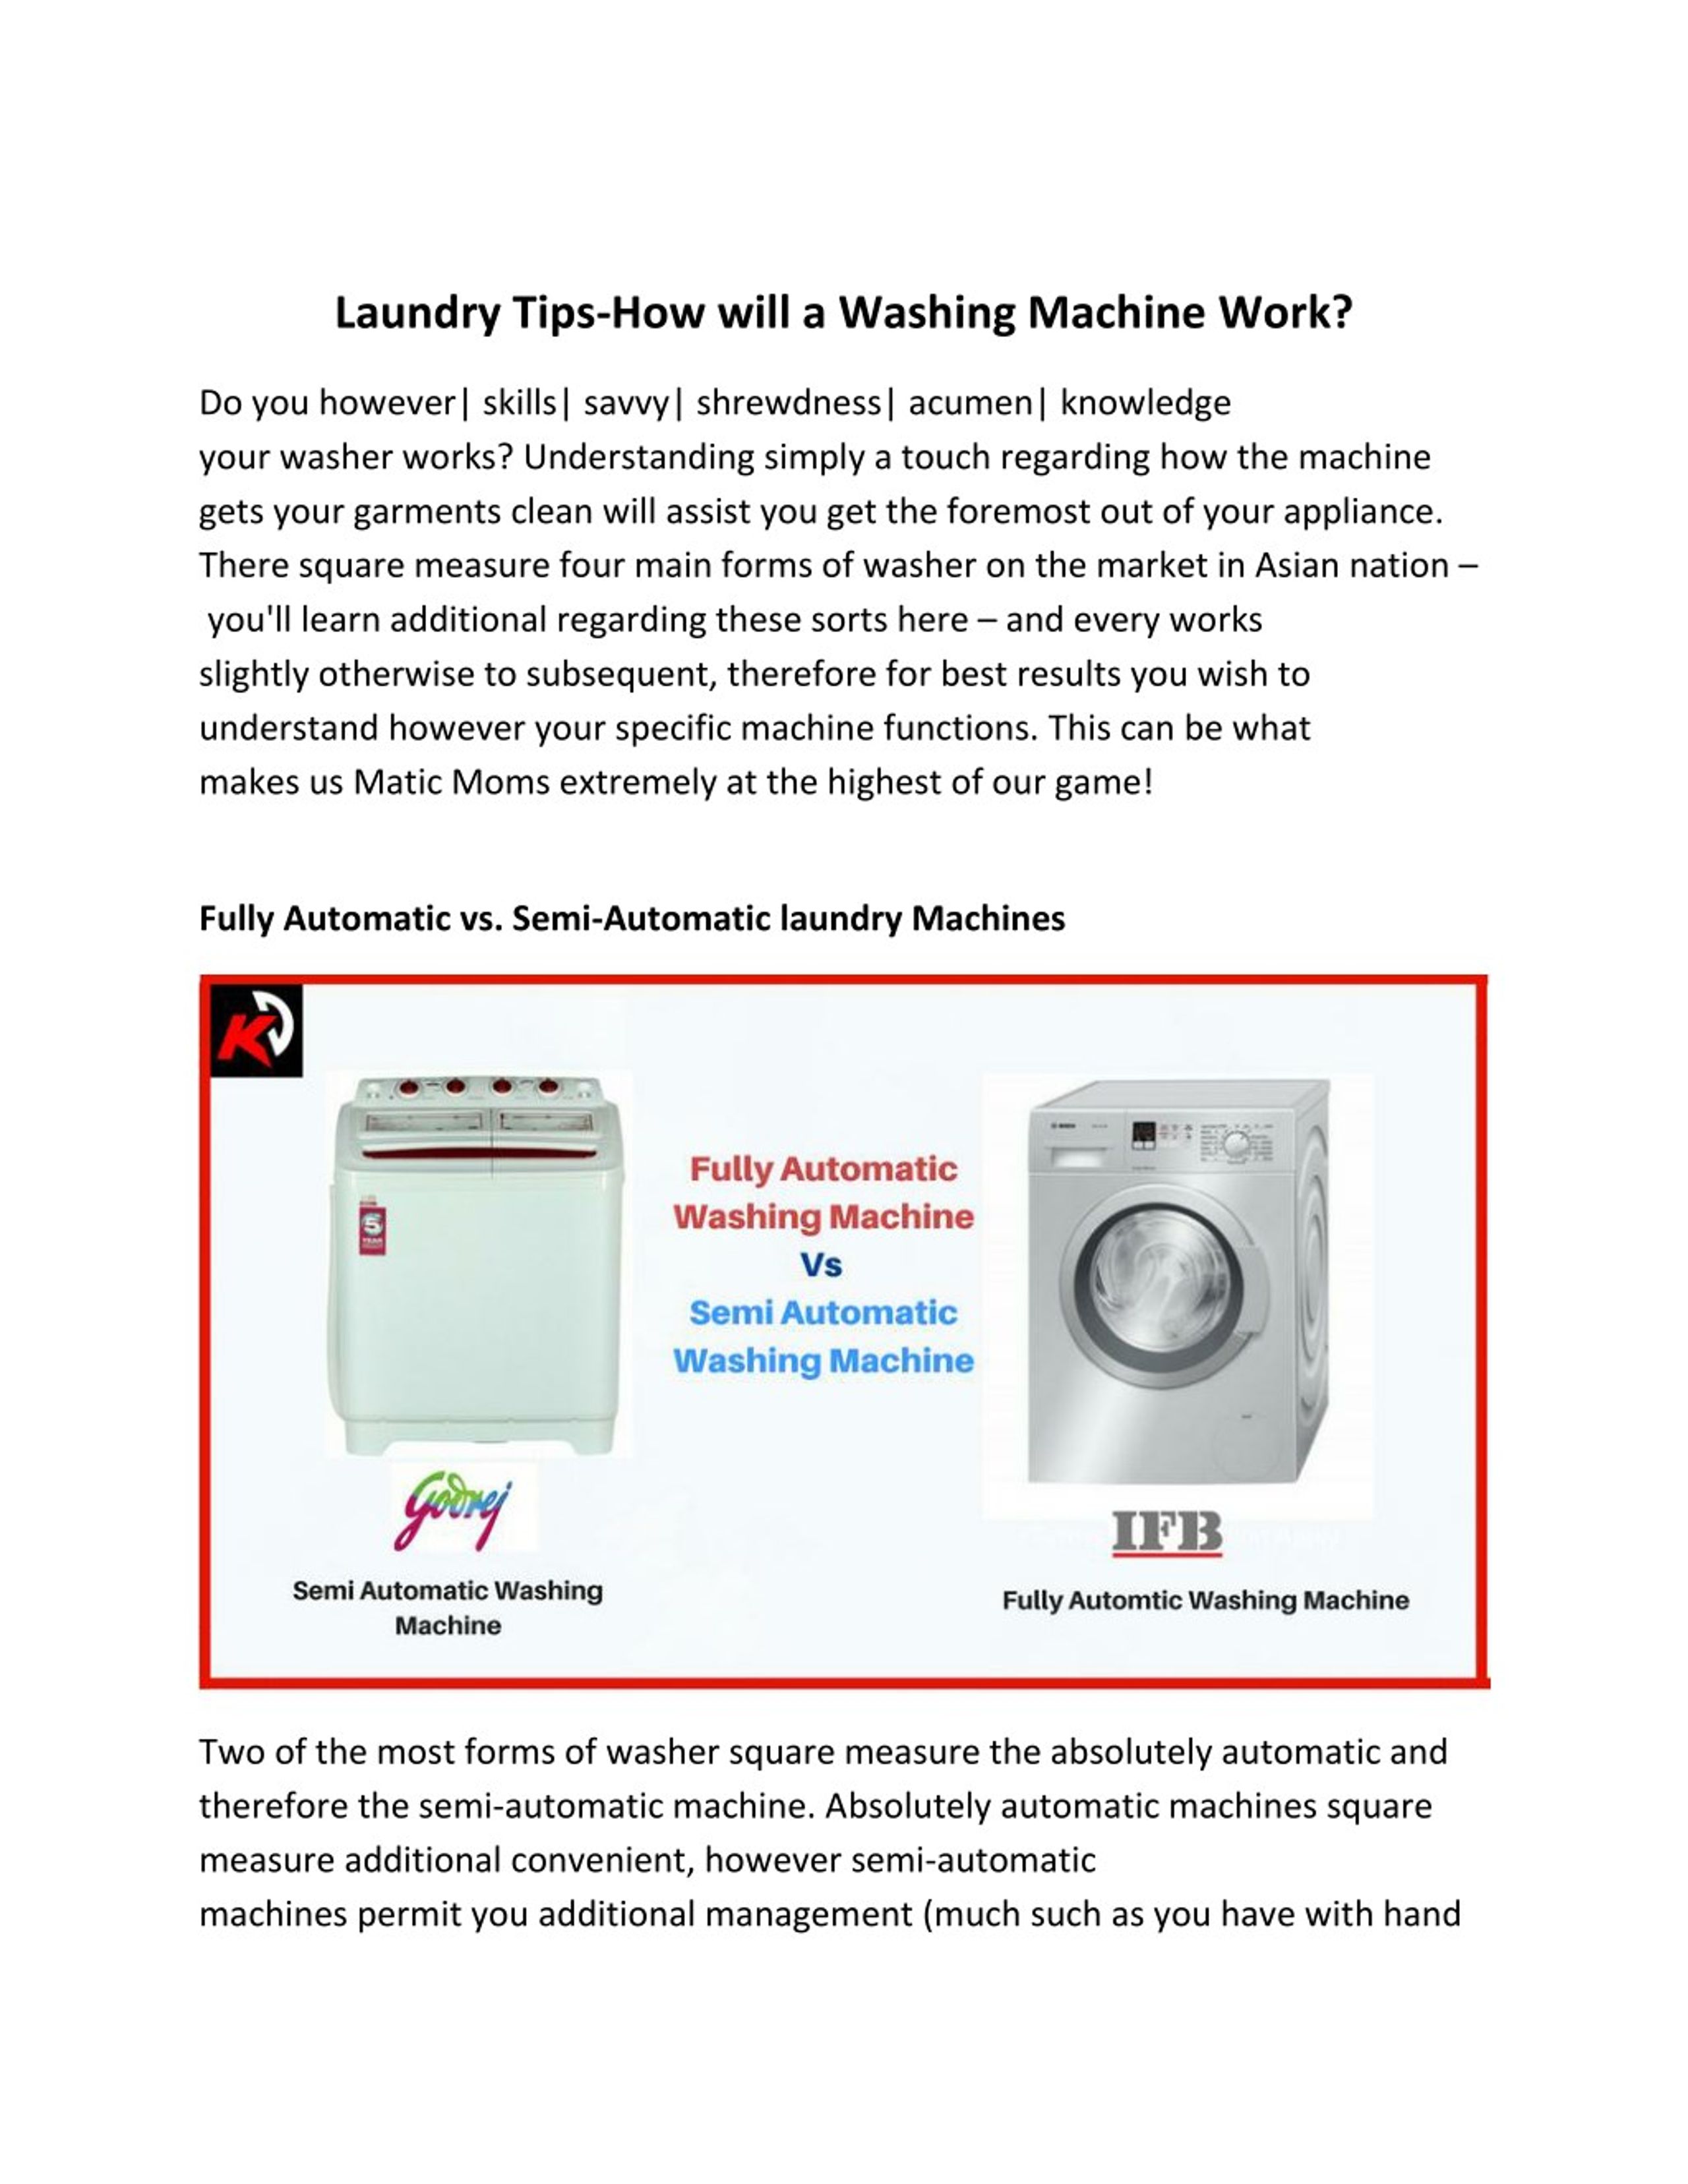 laundry washing tips